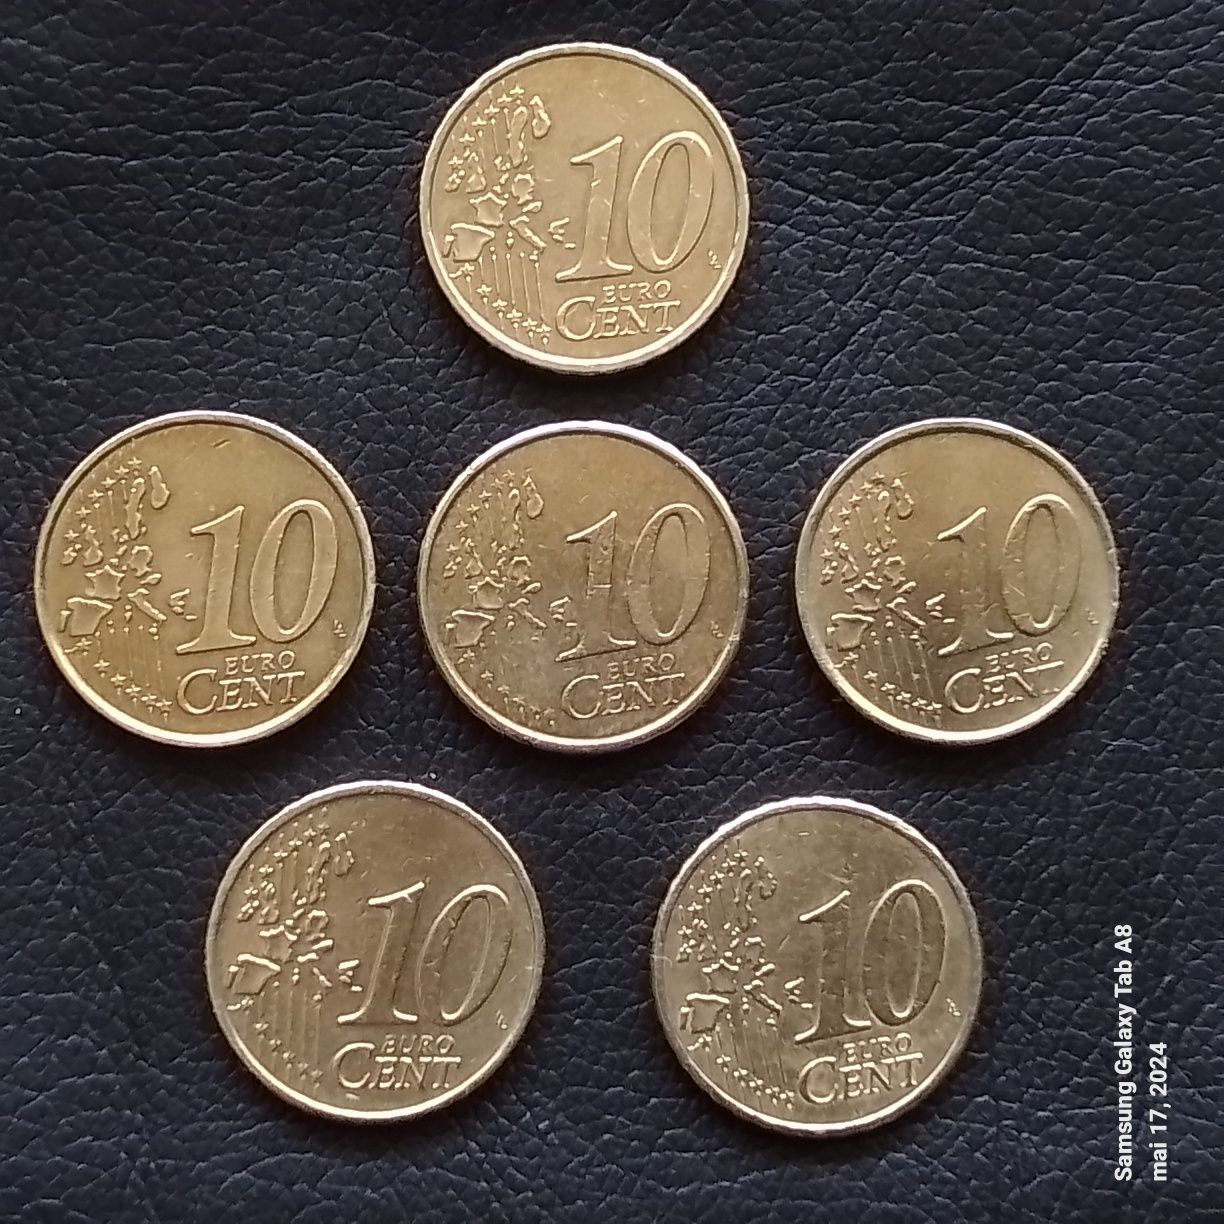 TOP monede 10 cent an 2002